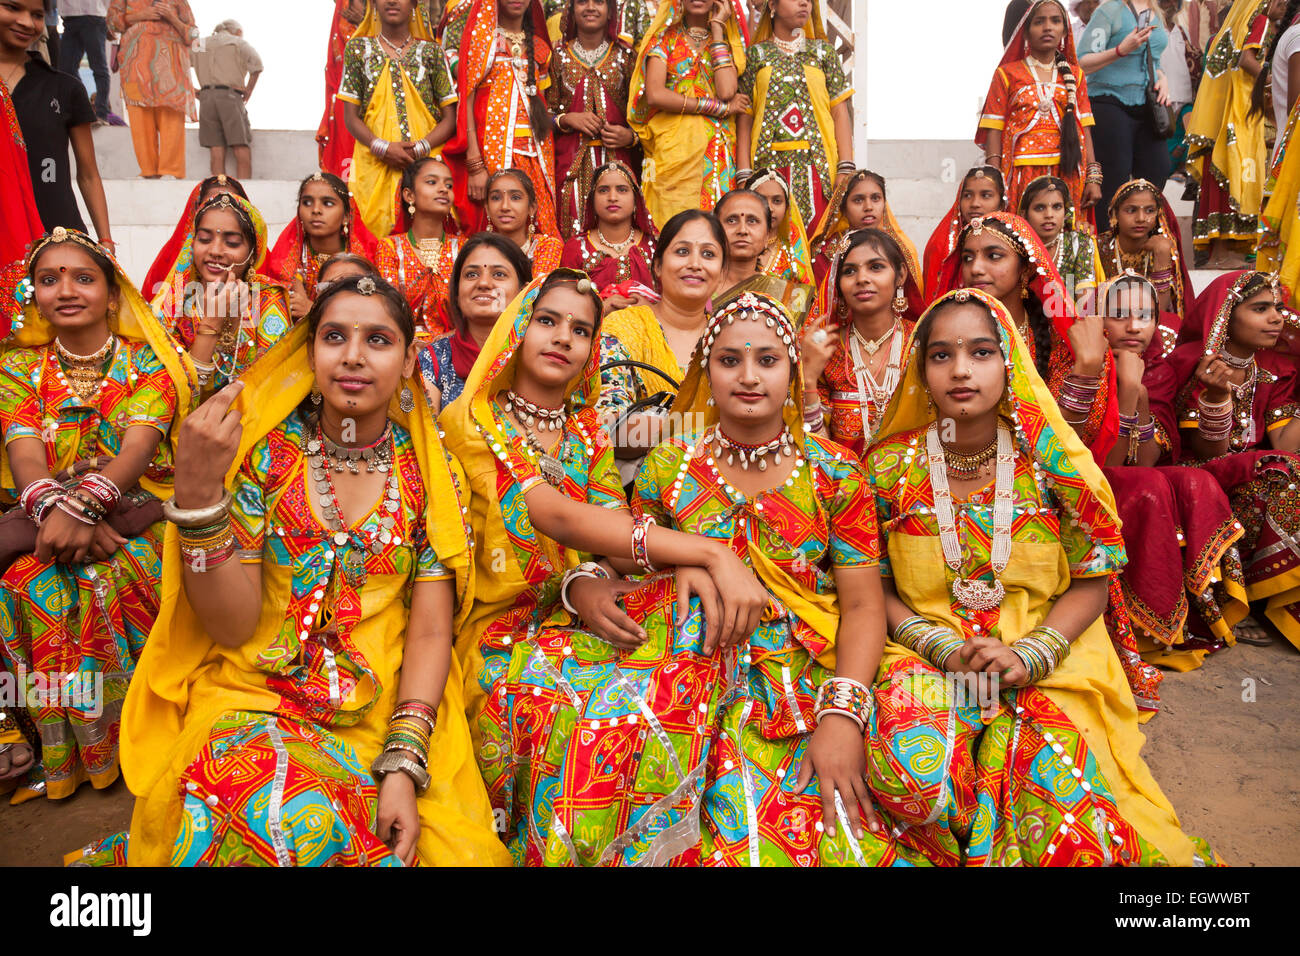 Jeune femme dans leurs vêtements traditionnels colorés typiques à la foire Pushkar Mela chameau, Pushkar, Rajasthan, Inde, Asie Banque D'Images